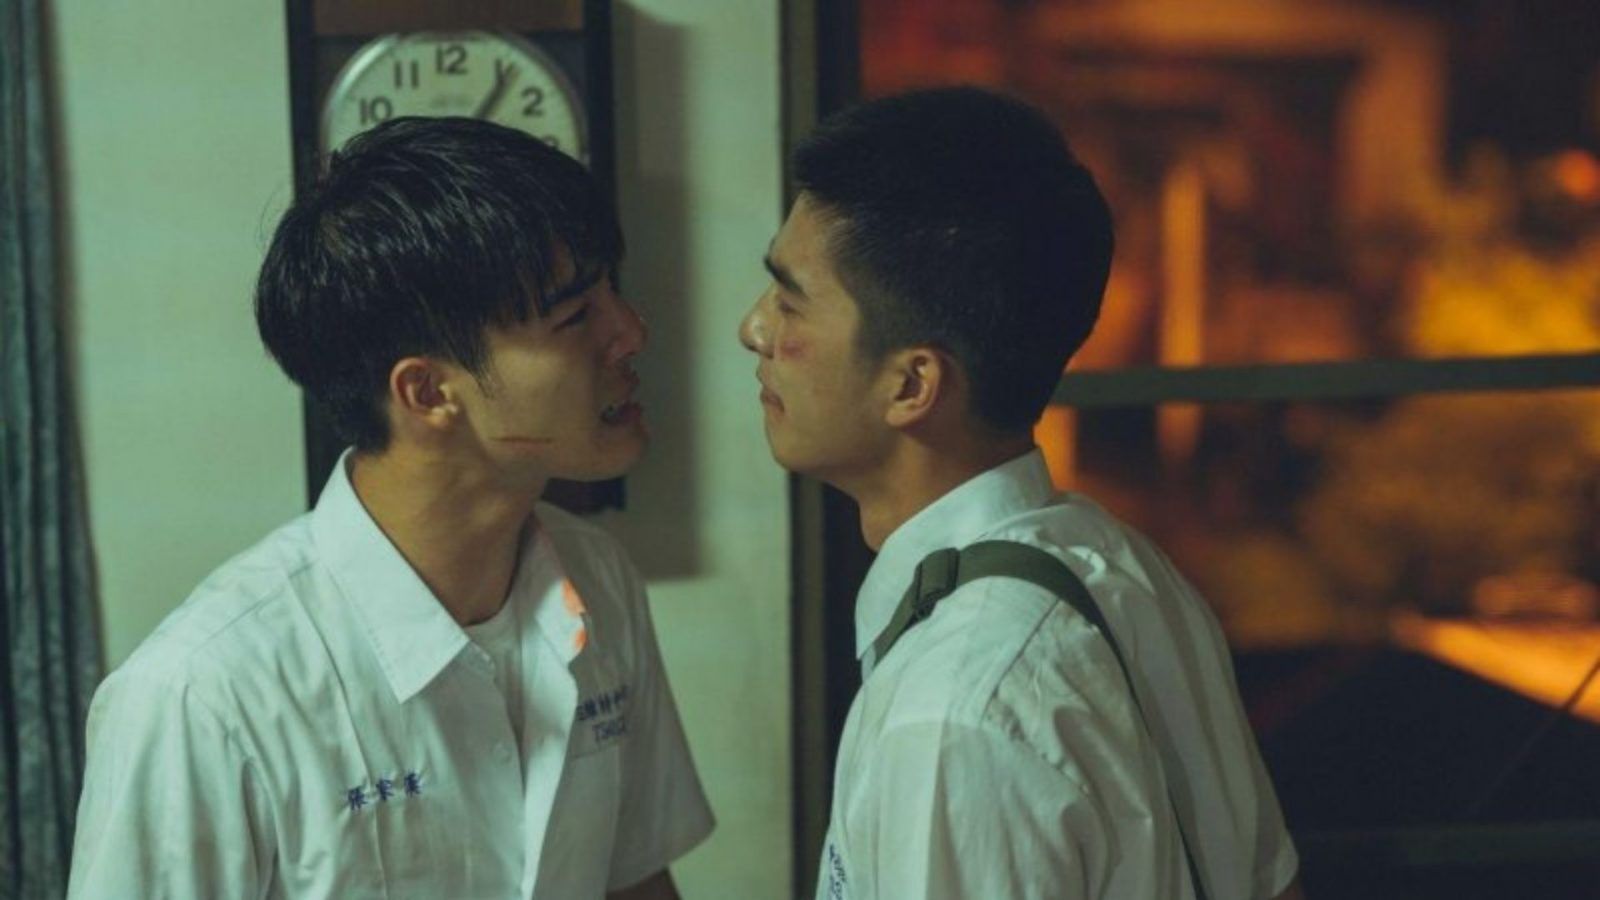 Phim đồng tính châu Á: Với cốt truyện chân thực và diễn xuất sống động, phim đồng tính châu Á thu hút được đông đảo khán giả trên toàn thế giới. Xem hình ảnh về các diễn viên xuất sắc, đạo diễn tài năng và các câu chuyện tình yêu đầy cảm xúc để trải nghiệm tình yêu không biên giới.